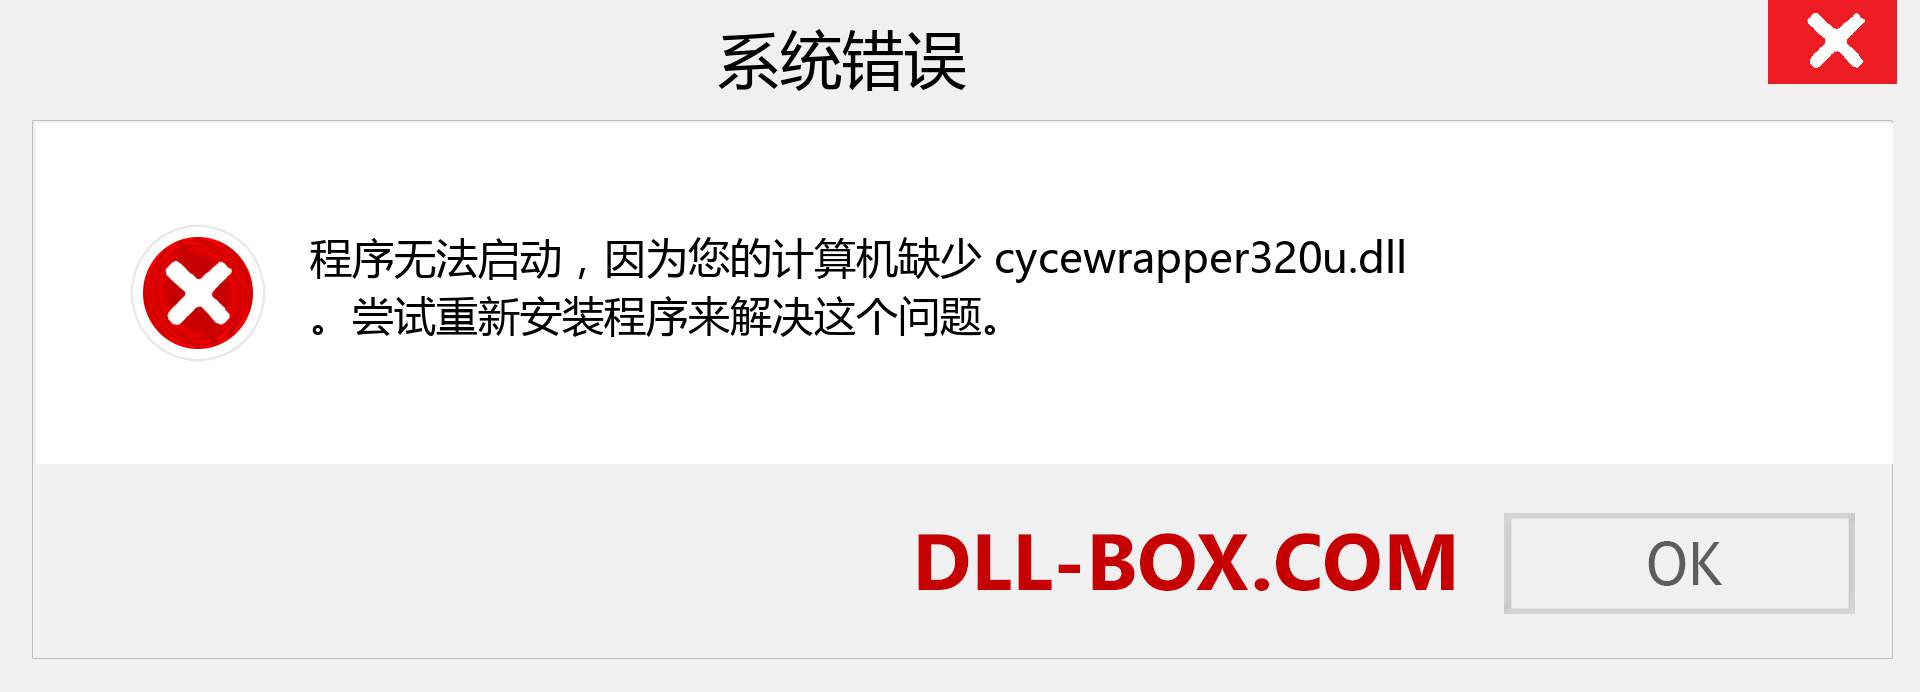 cycewrapper320u.dll 文件丢失？。 适用于 Windows 7、8、10 的下载 - 修复 Windows、照片、图像上的 cycewrapper320u dll 丢失错误